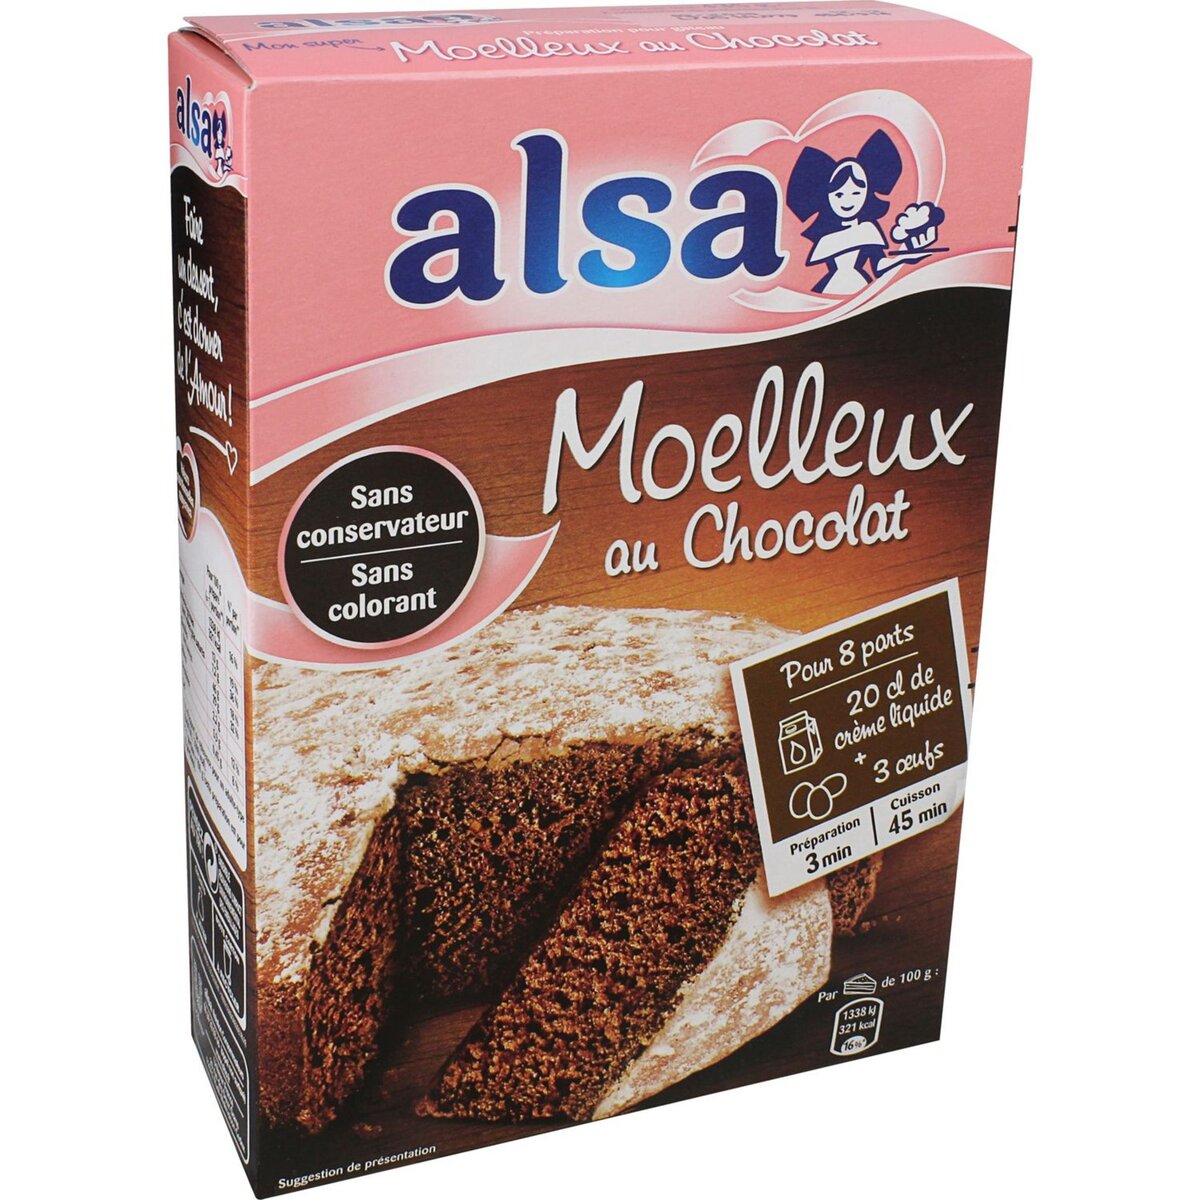 ALSA Préparation pour moelleux chocolat sans colorant sans conservateur 8 parts 435g